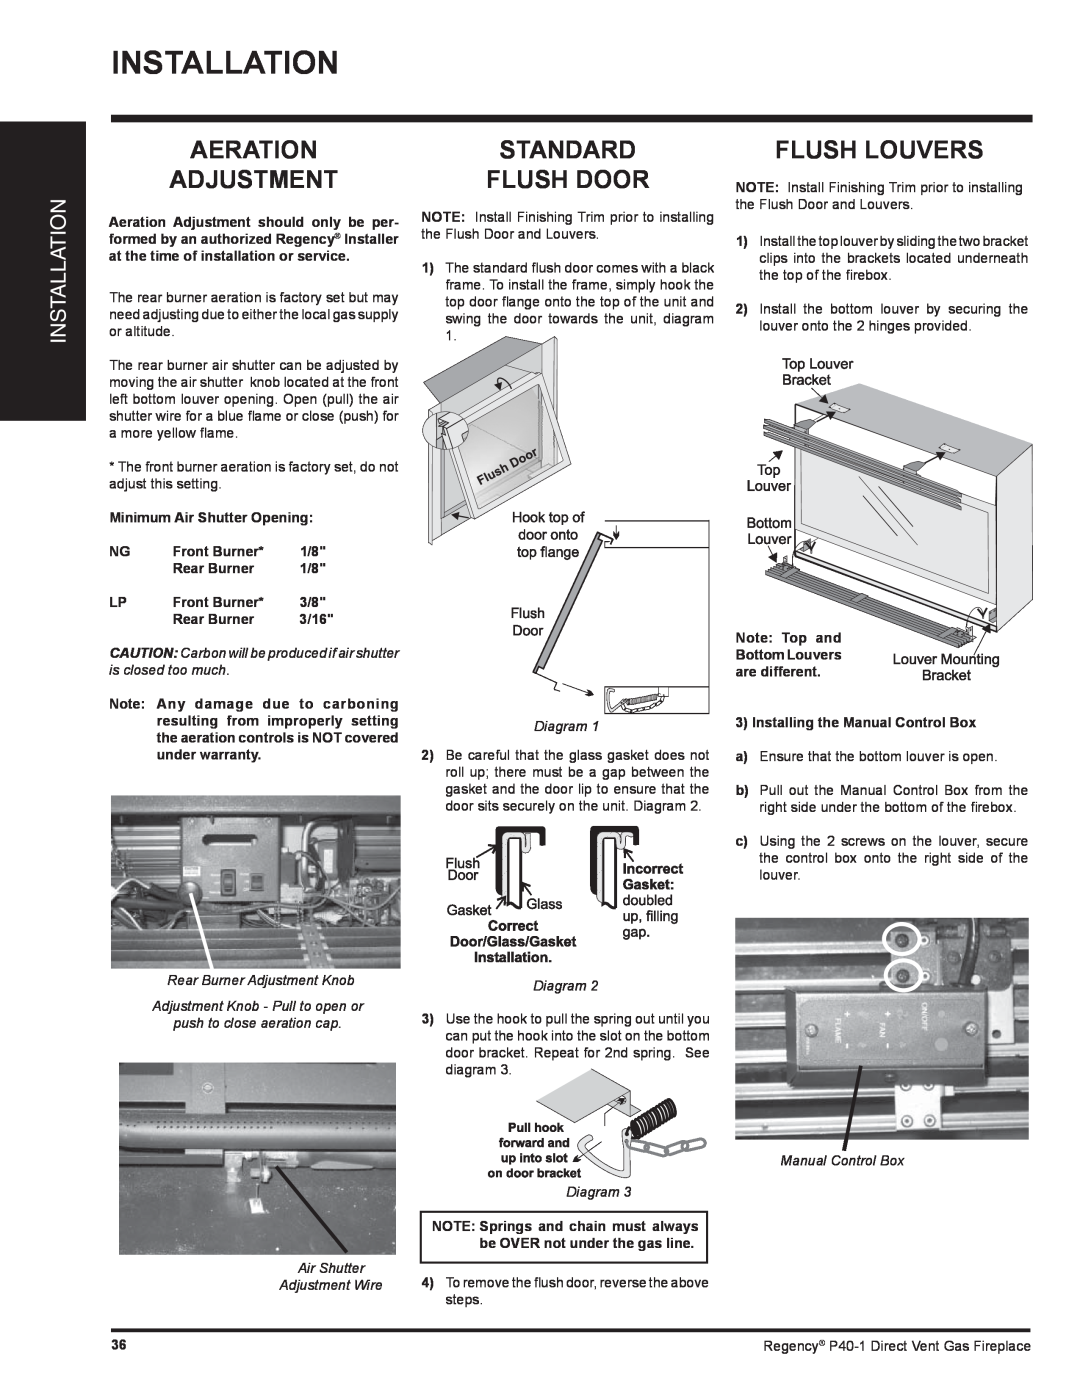 Regency P40-NG1 Aeration Adjustment, Standard Flush Door, Flush Louvers, Installation, Minimum Air Shutter Opening, 3/16 